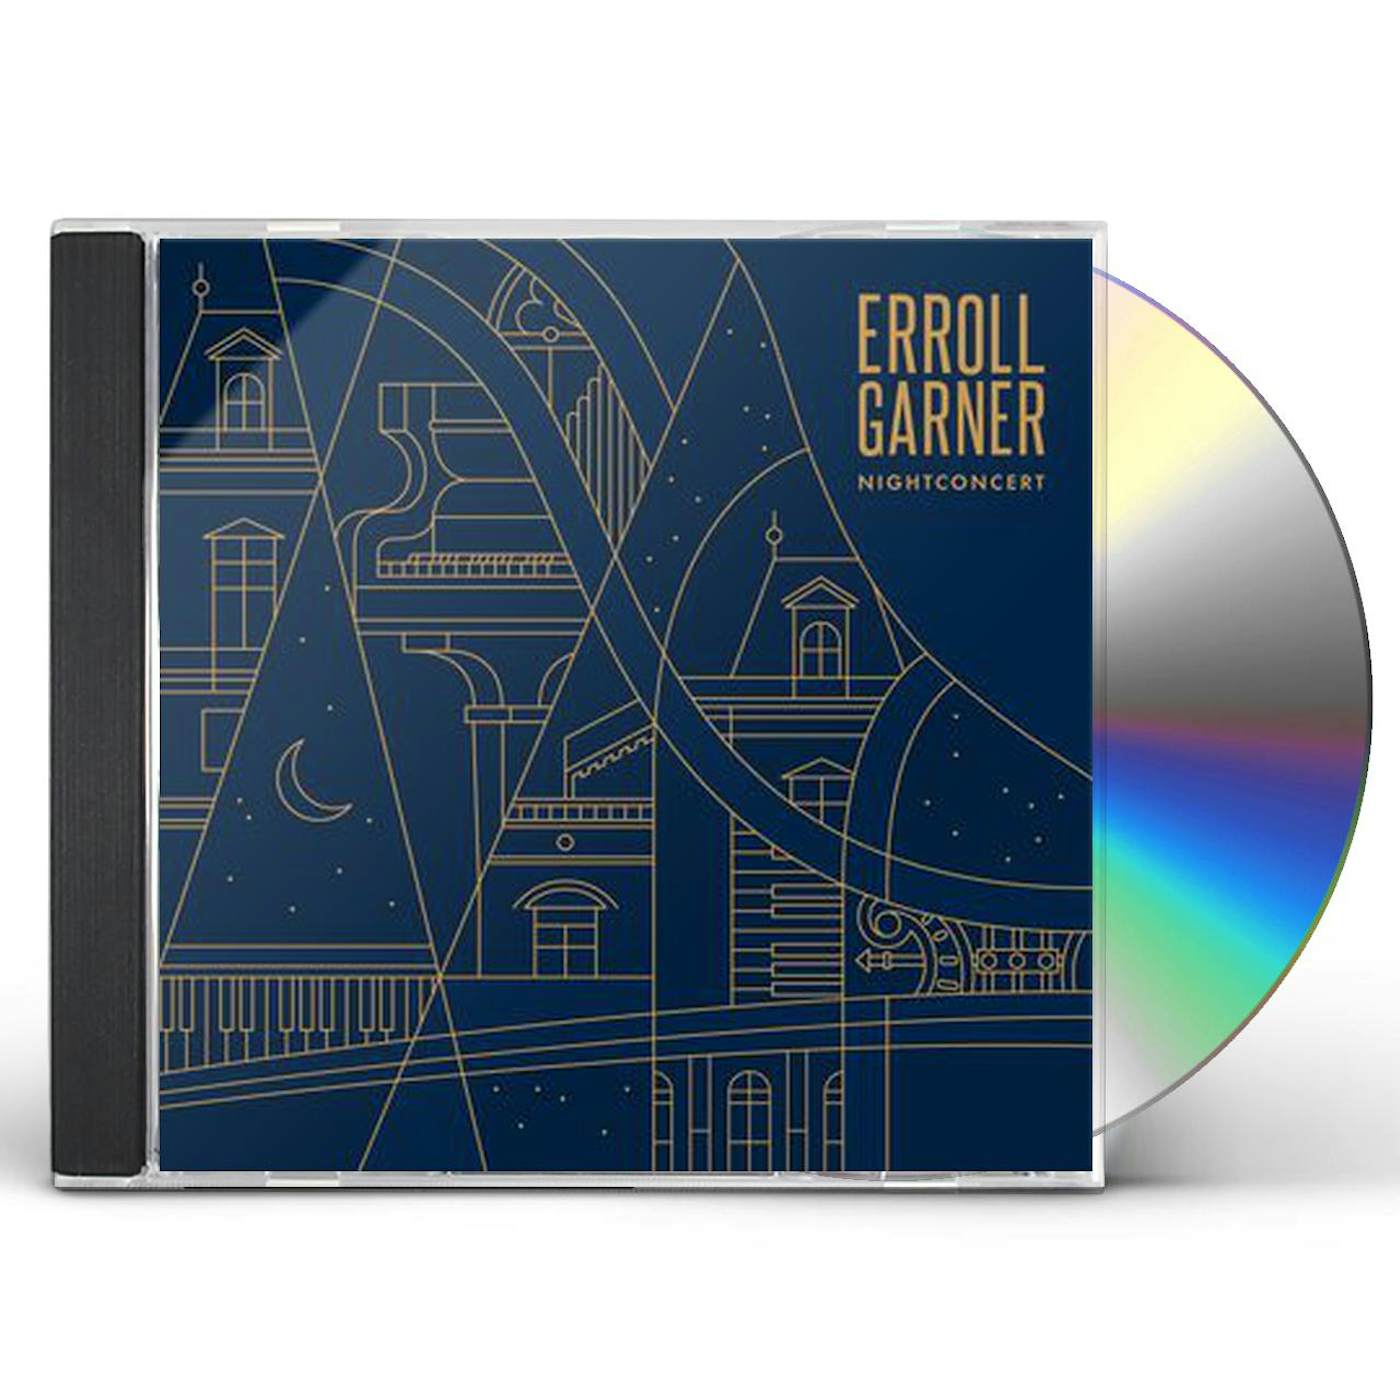 Erroll Garner NIGHTCONCERT CD